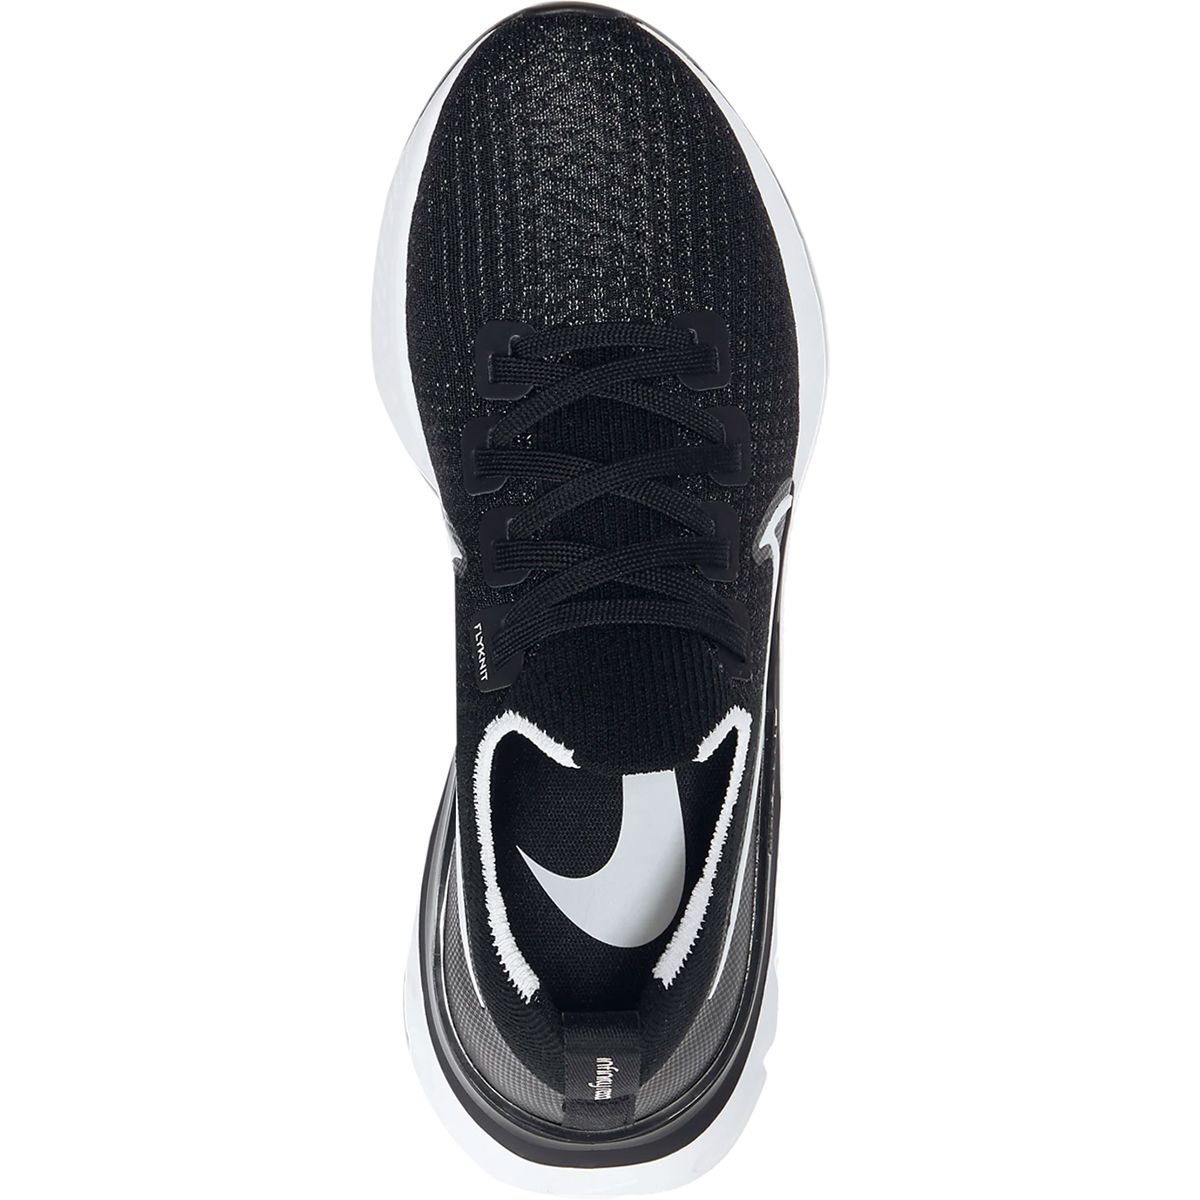 Nike React Infinity Run Flyknit Running Shoe - Women's | Backcountry.com